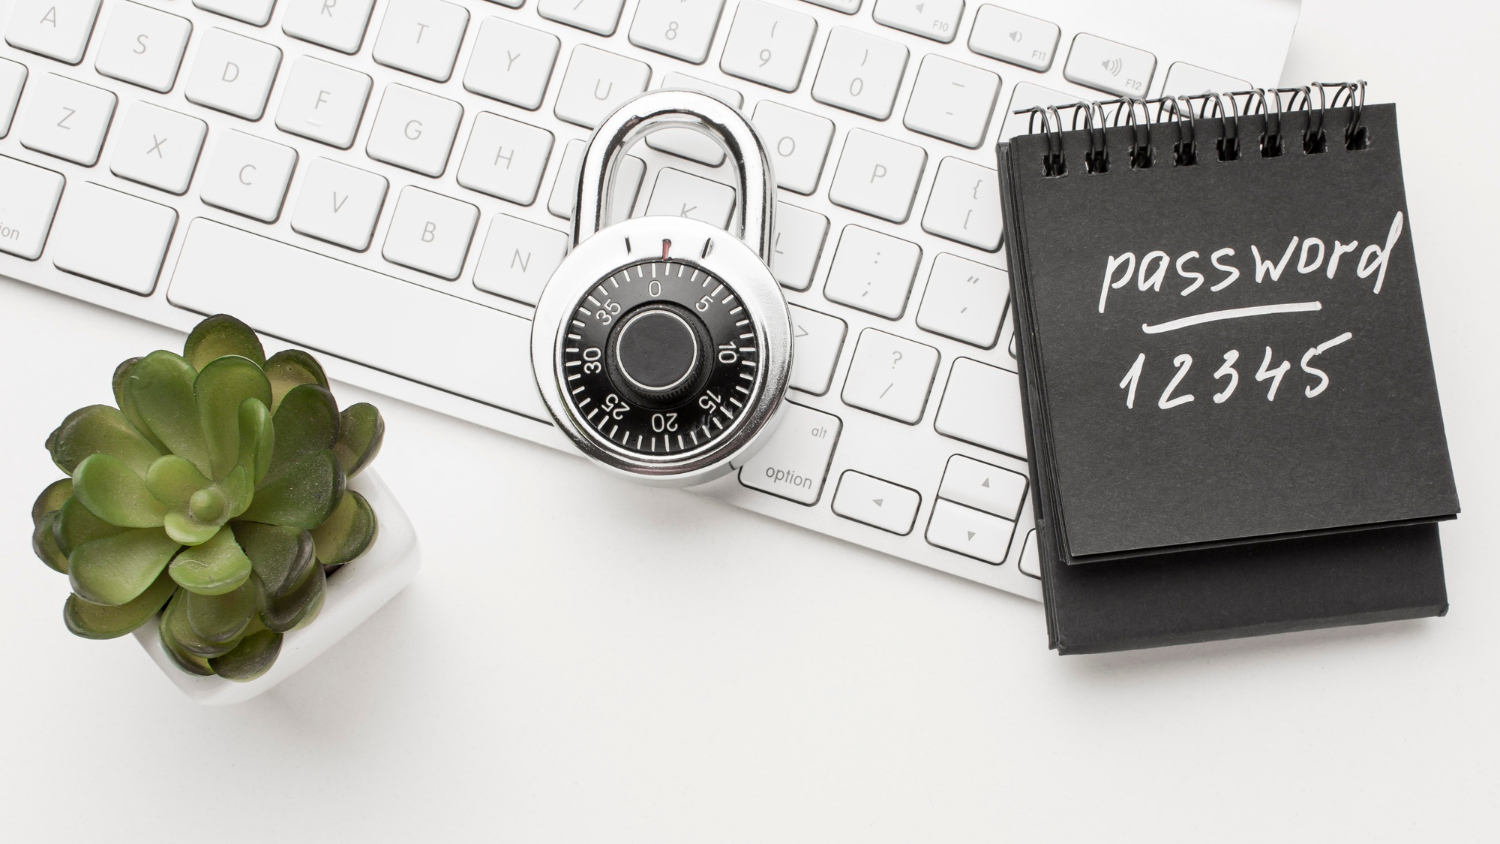 Tastatur mit Passwort auf Zettel und Zahlenschloss. Abbildung für den Computer Security Day